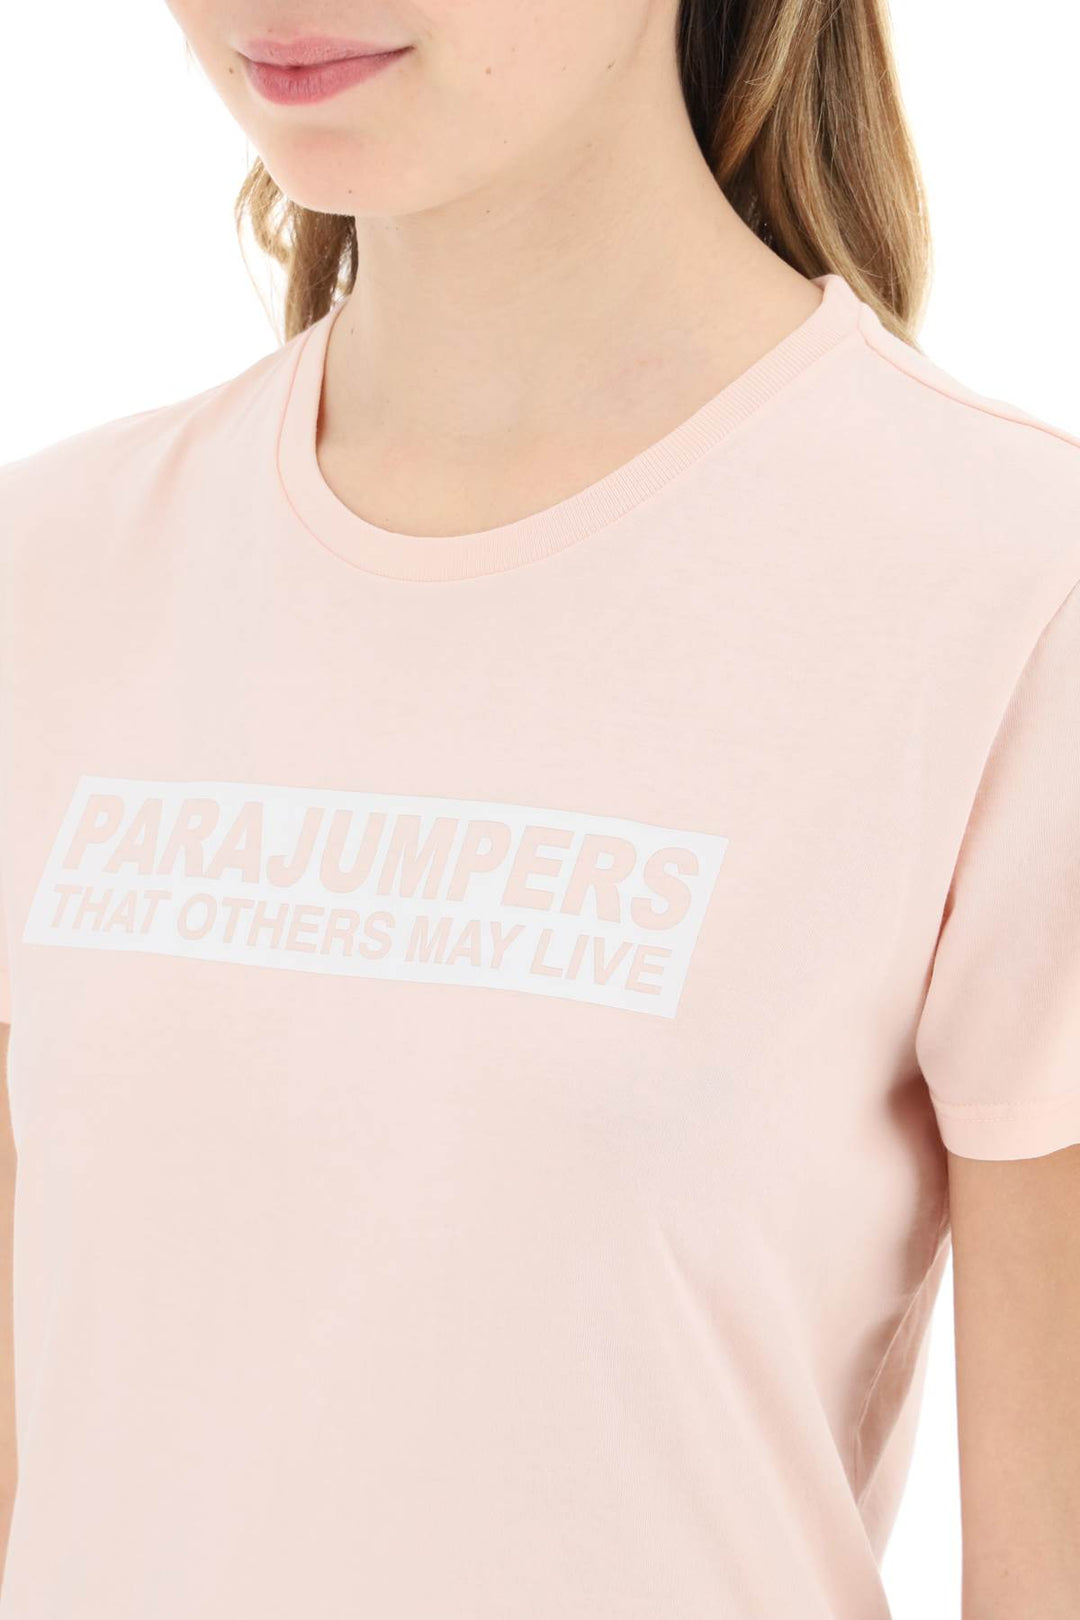 Parajumpers 'Box' Slim Fit Cotton T Shirt   Rosa